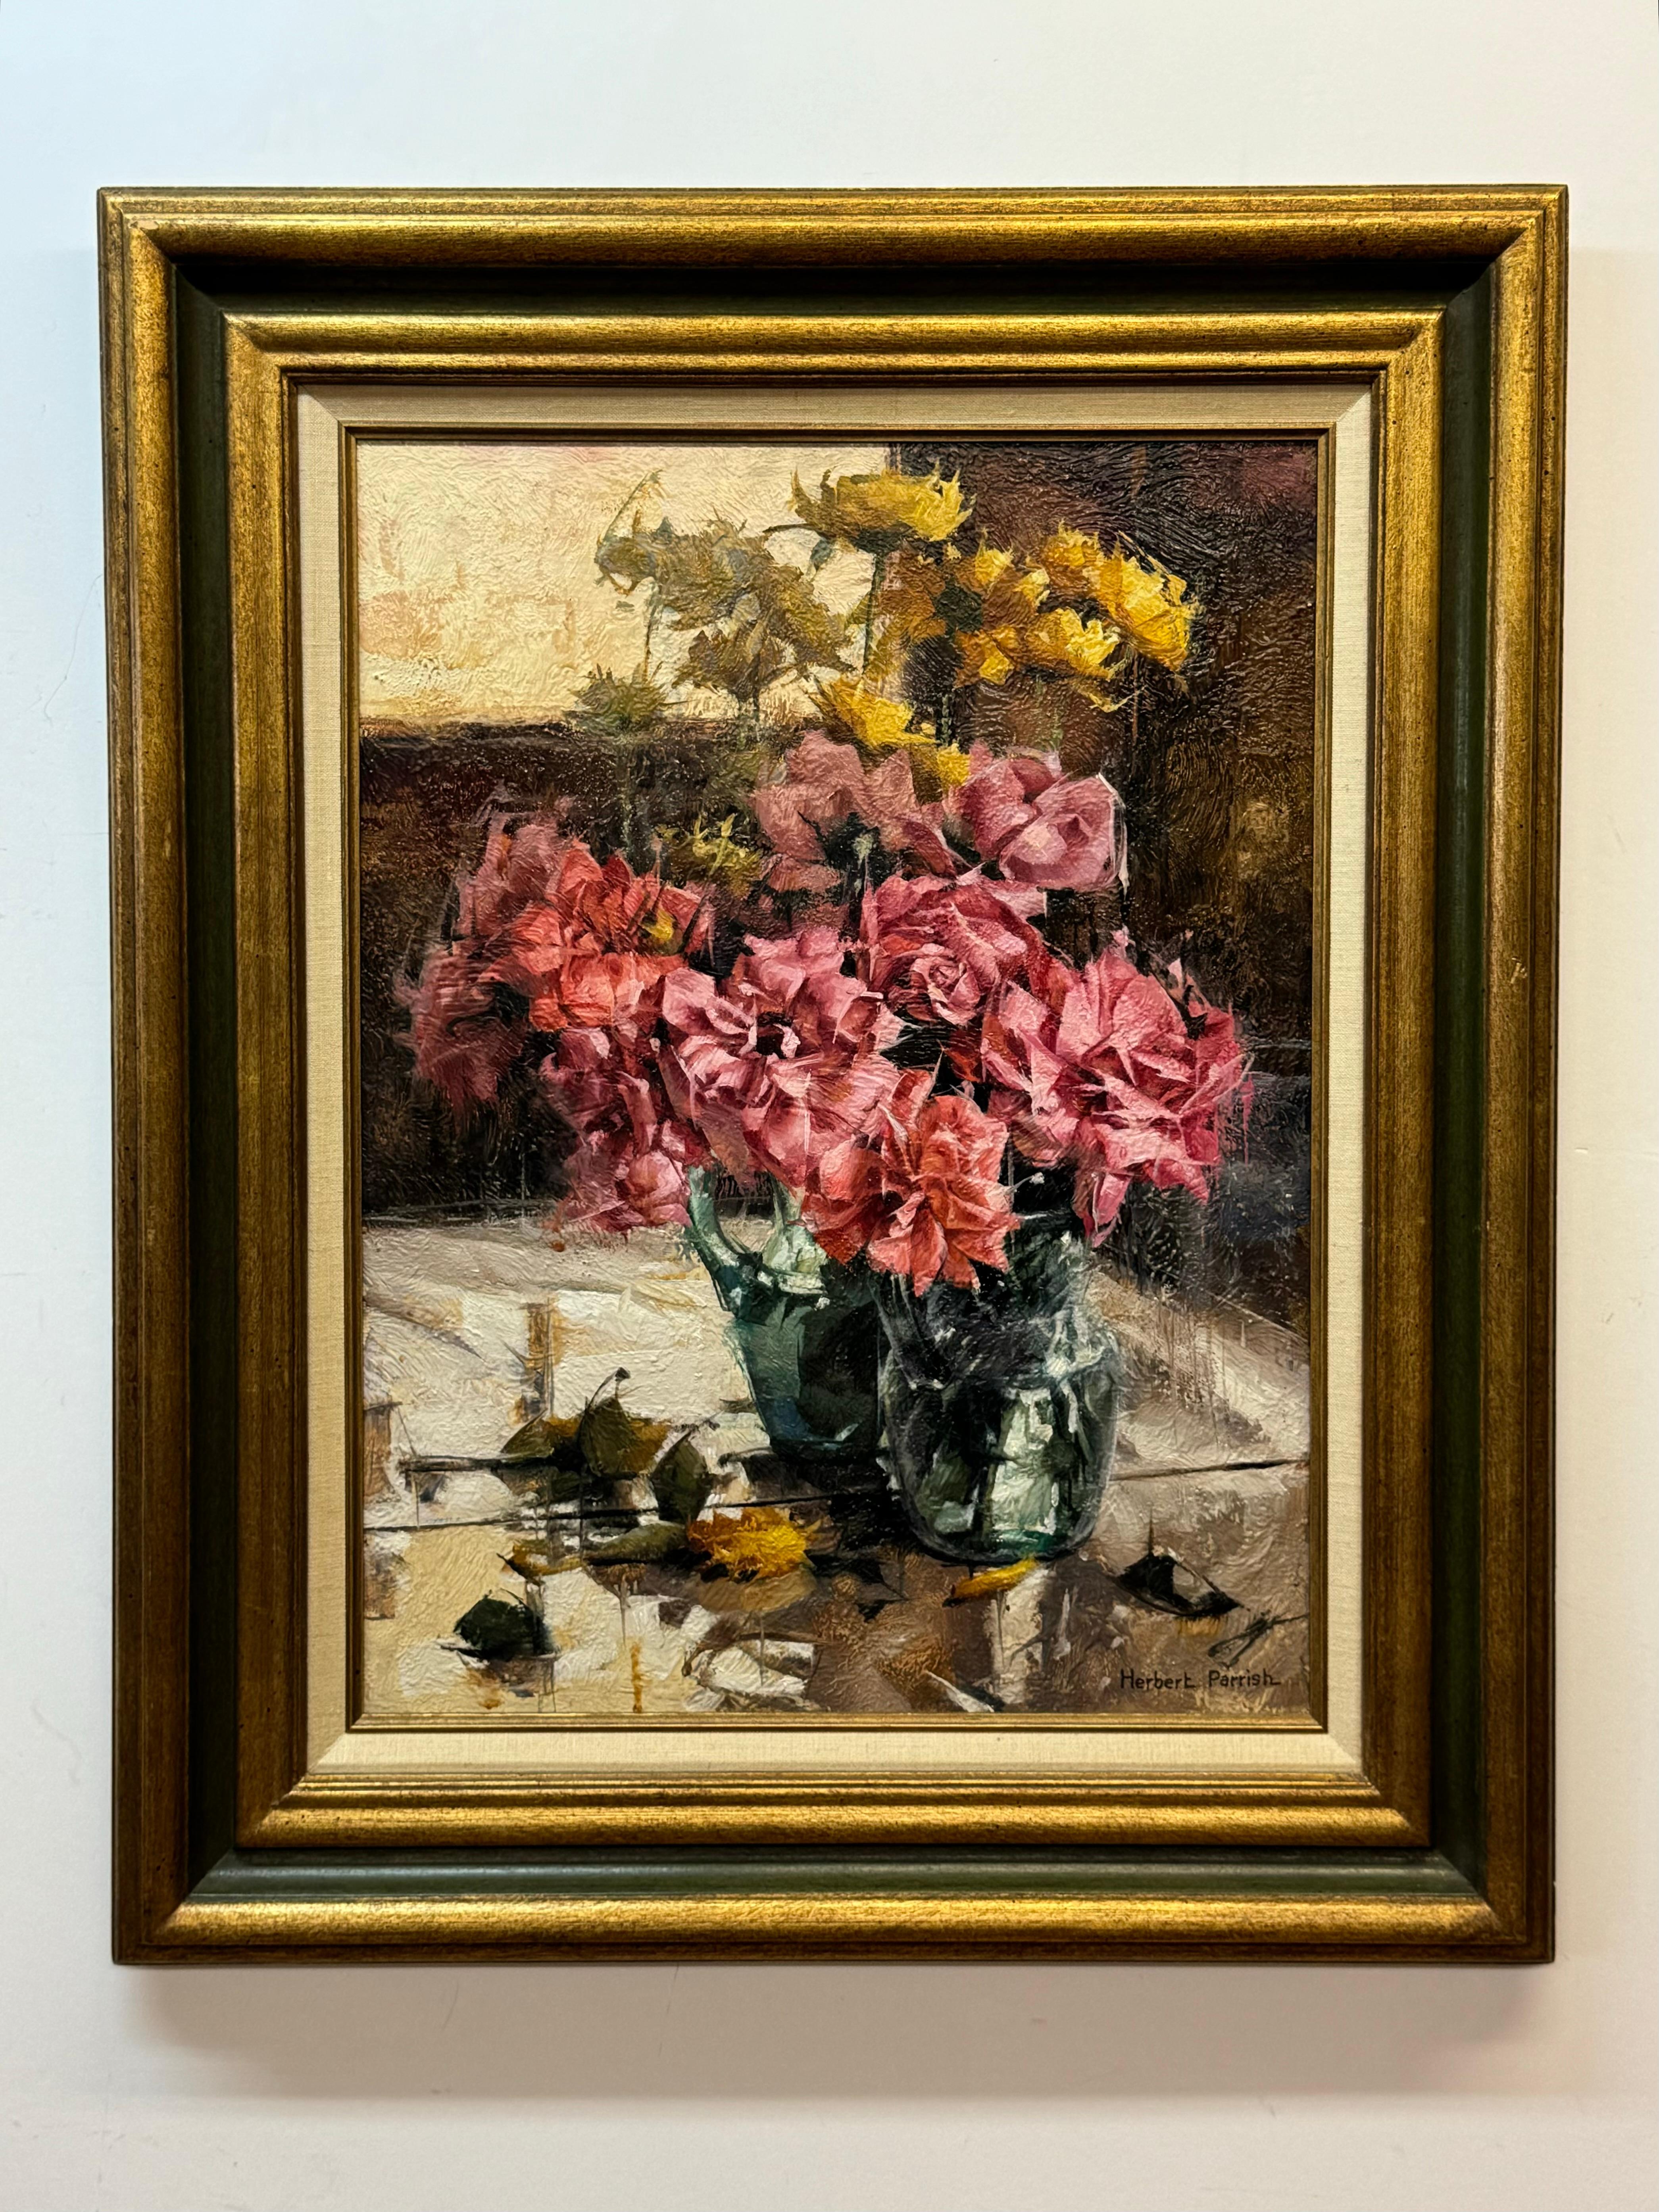 Herbert Parrish "Roses & Mirror" Floral Still Life 